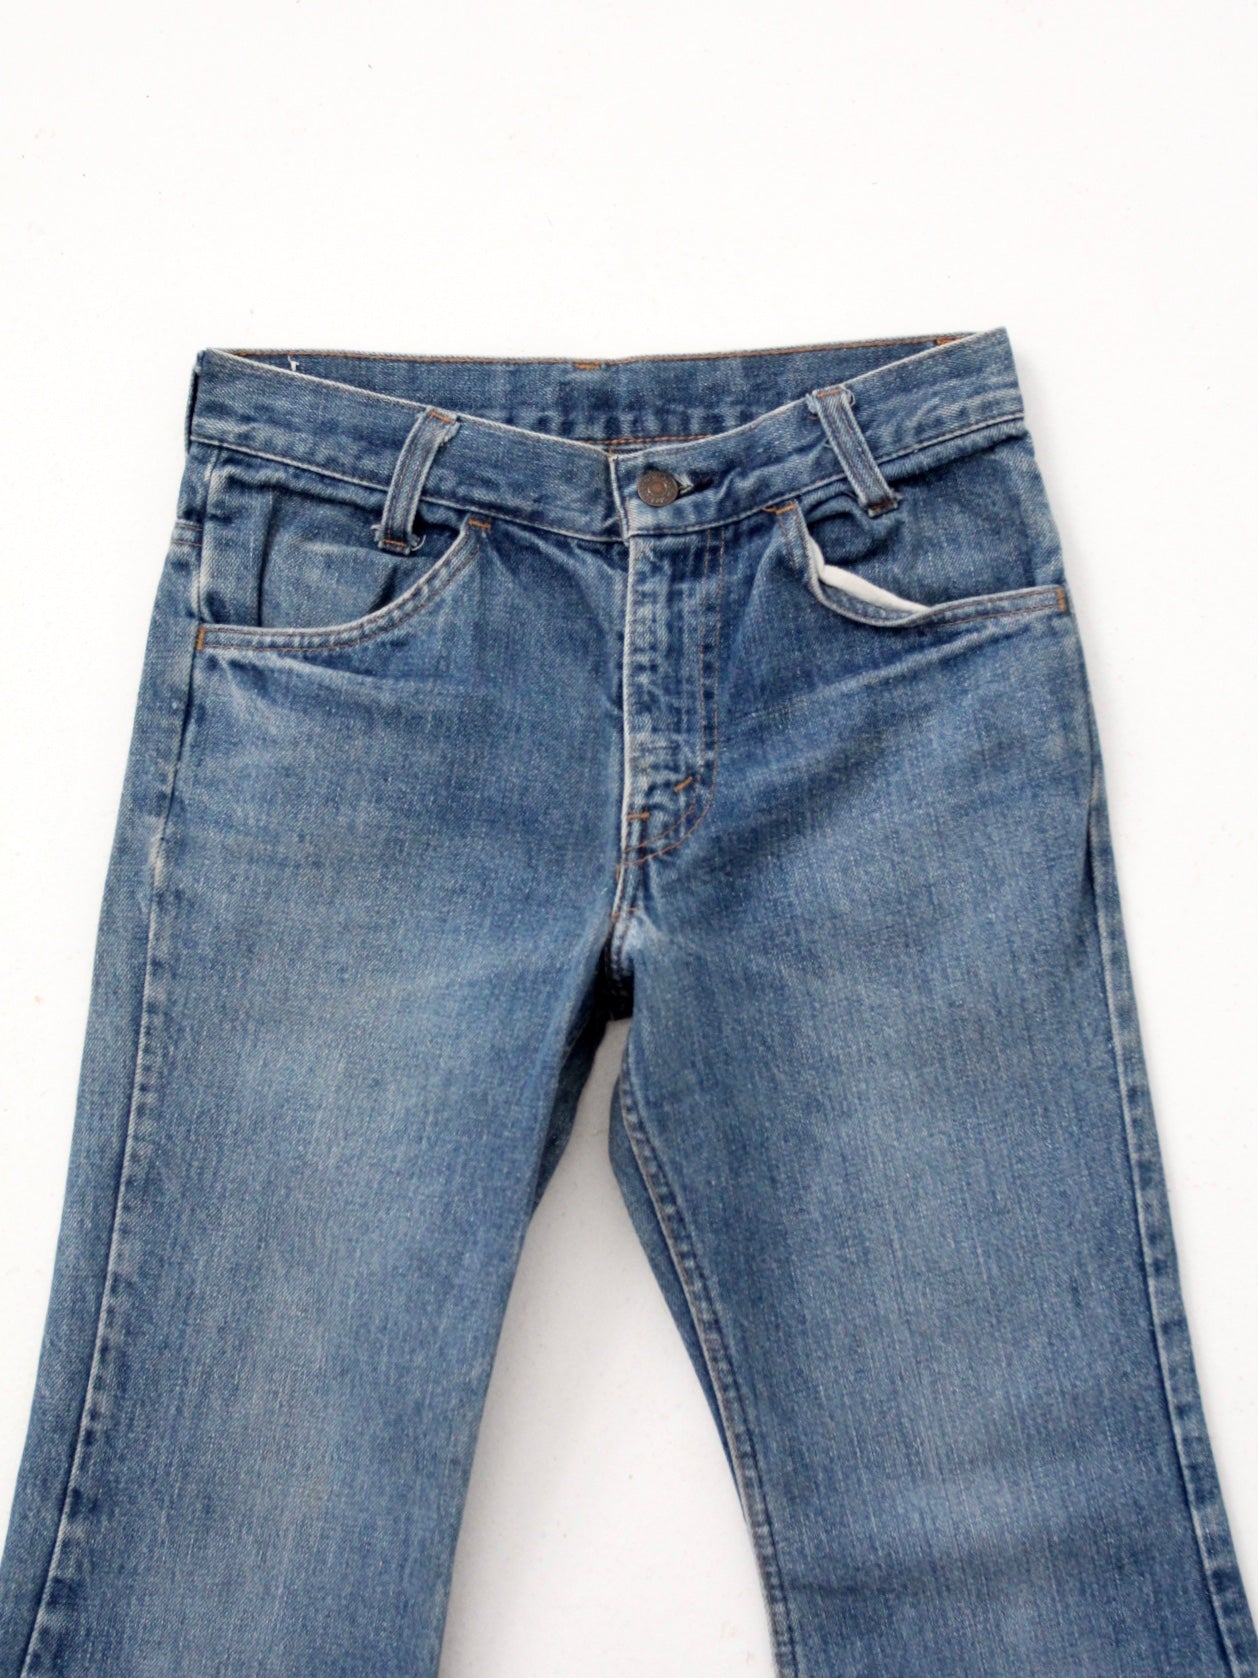 vintage Levis bell bottom jeans, 27 x 26 – 86 Vintage